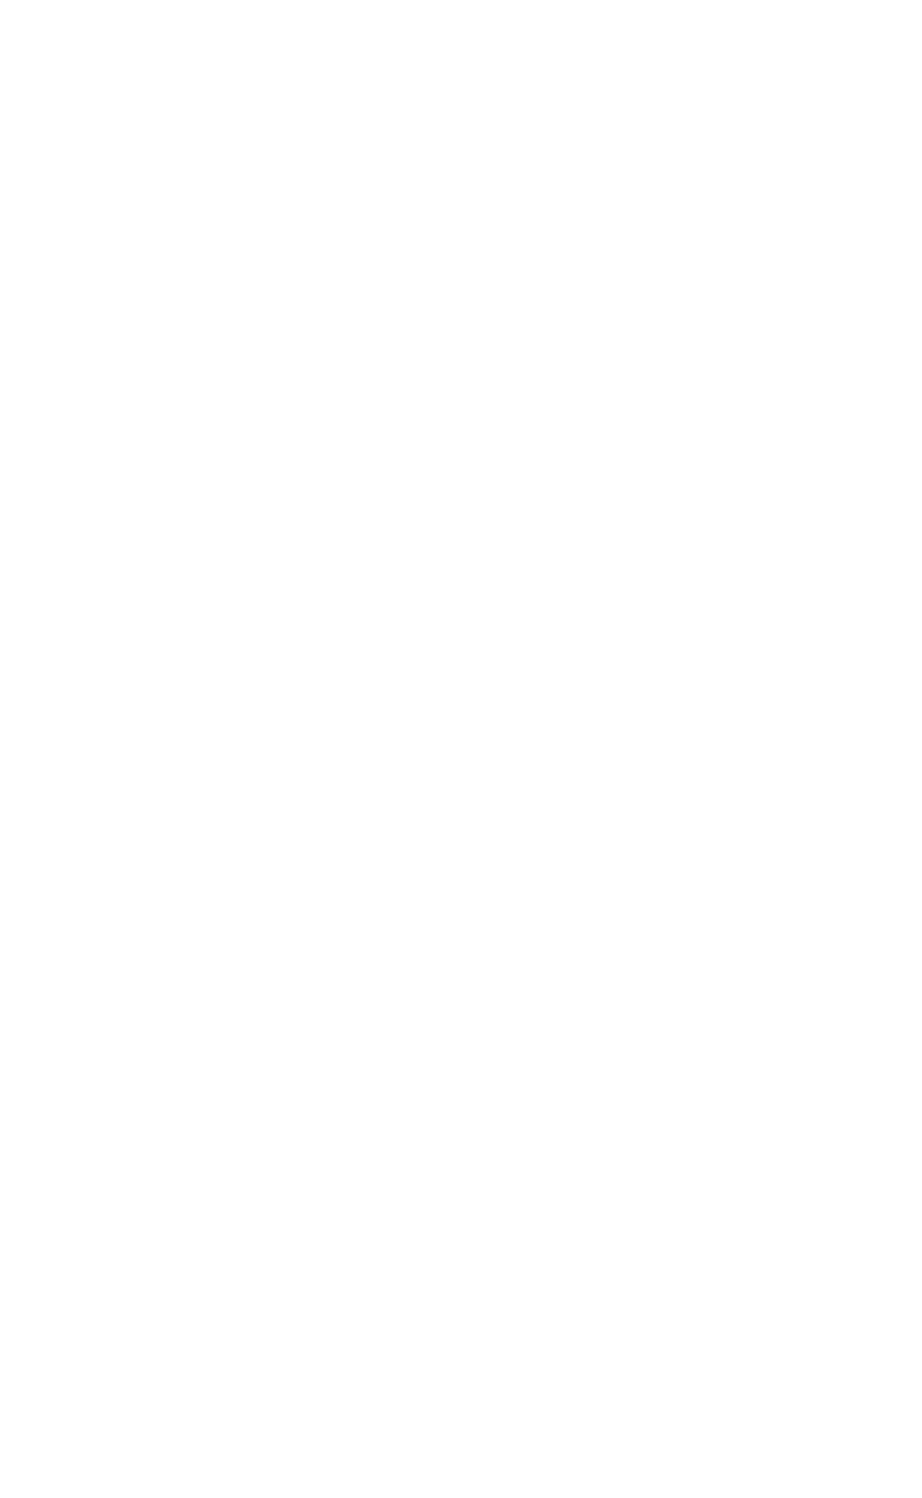 ADNOC Gas logo large for dark backgrounds (transparent PNG)